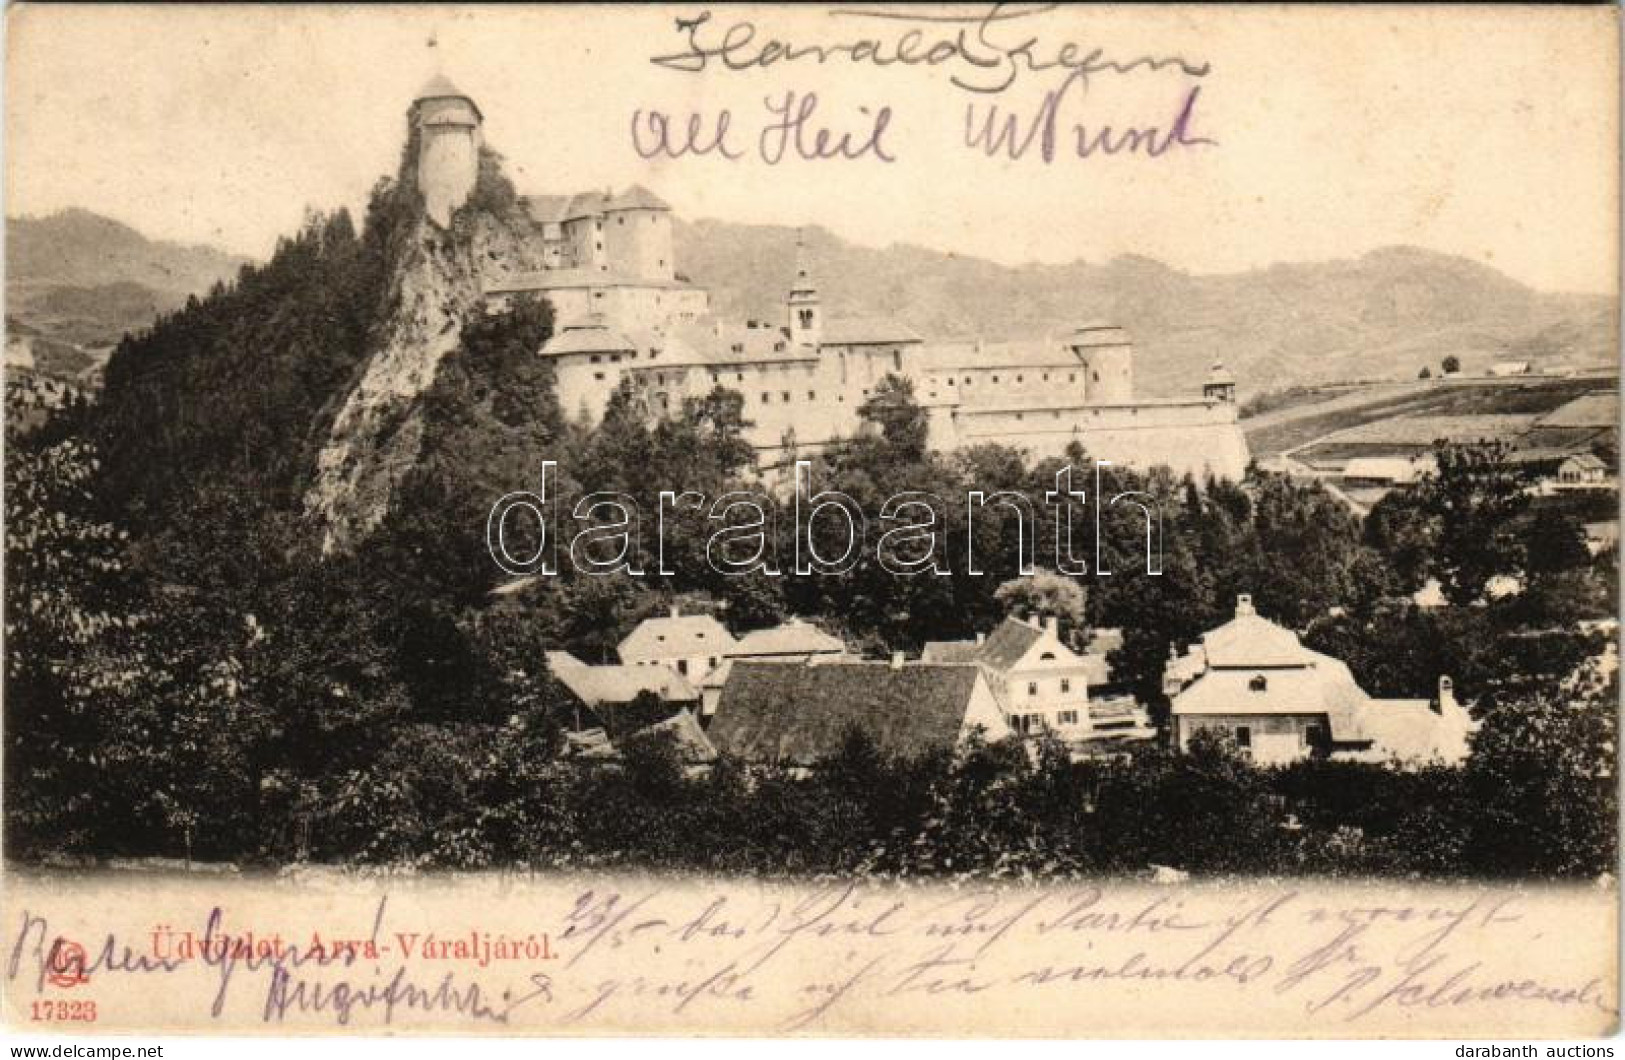 T2/T3 1904 Árvaváralja, Oravsky Podzámok; Vár / Hrad / Castle (fa) - Unclassified